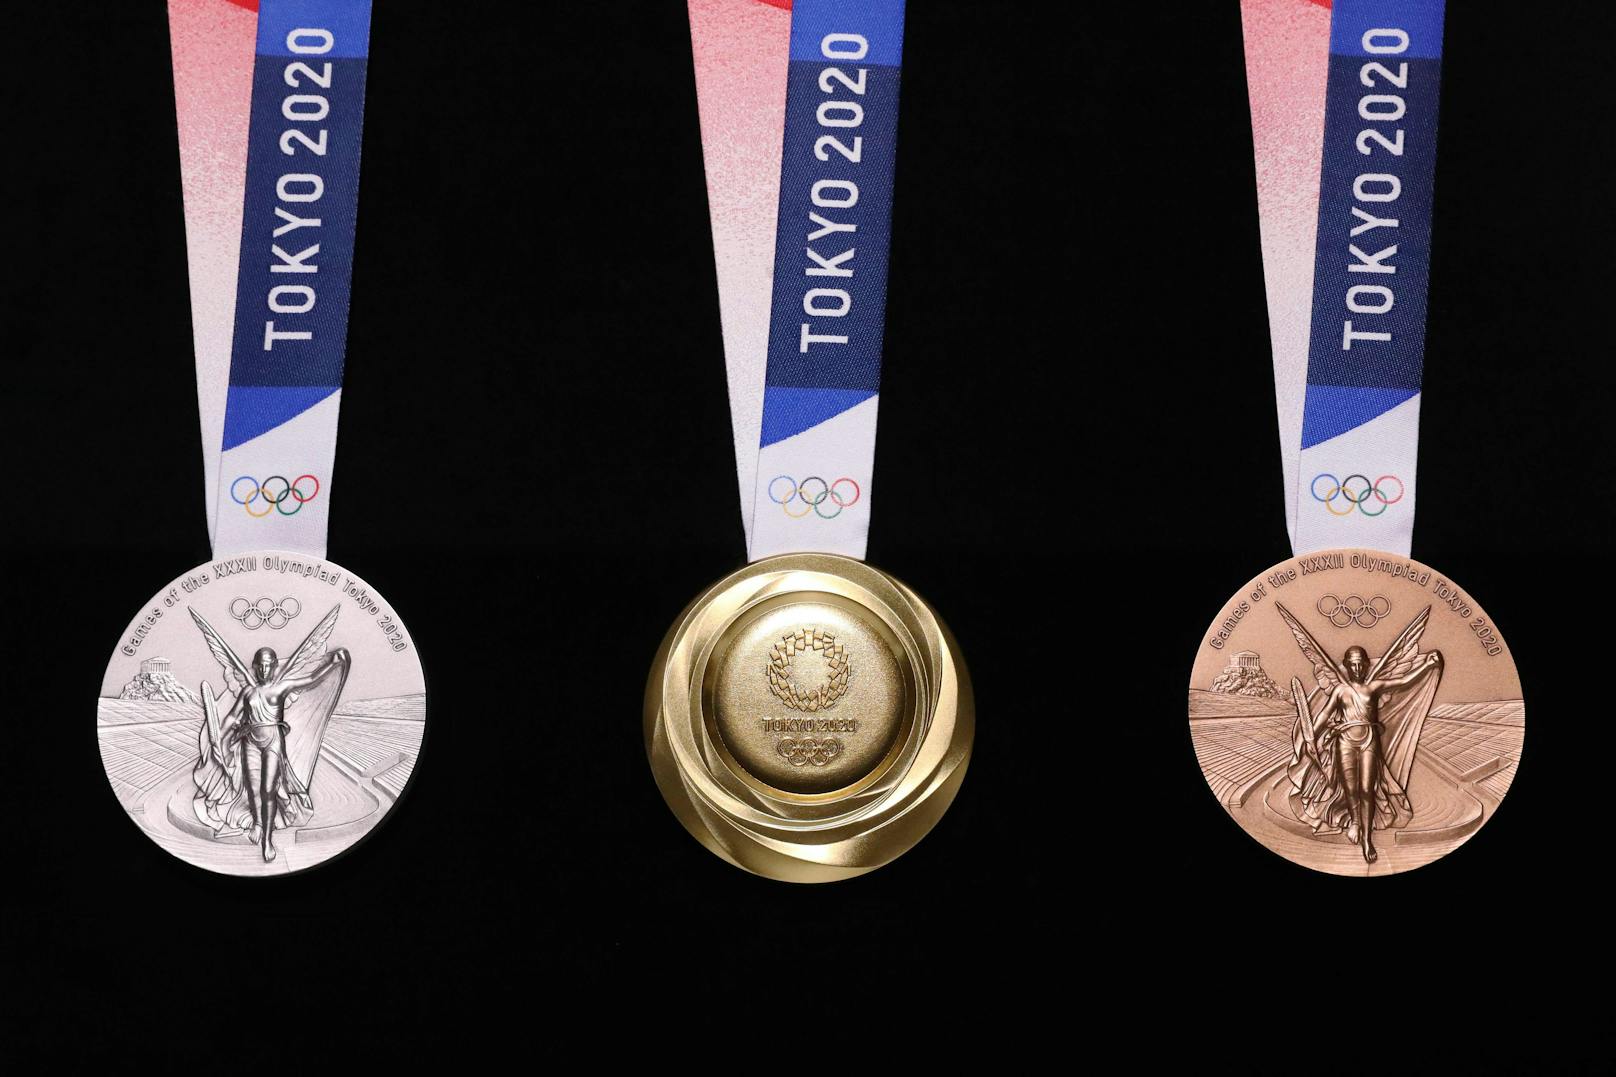 Die Sieger-Medaillen wurden letztes Jahr gemacht.